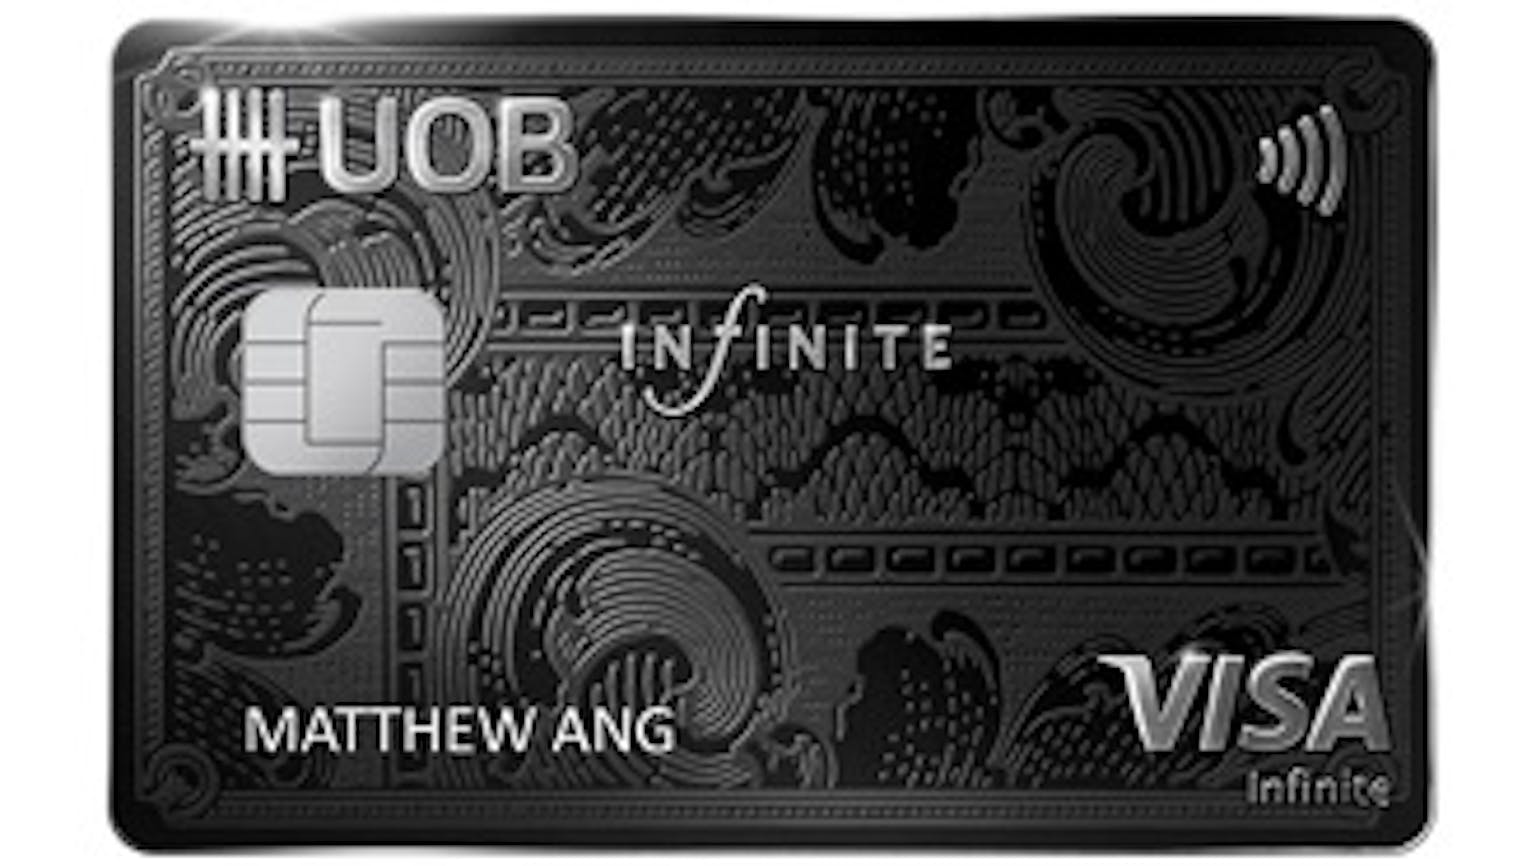 UOB Visa Infinite Metal Card